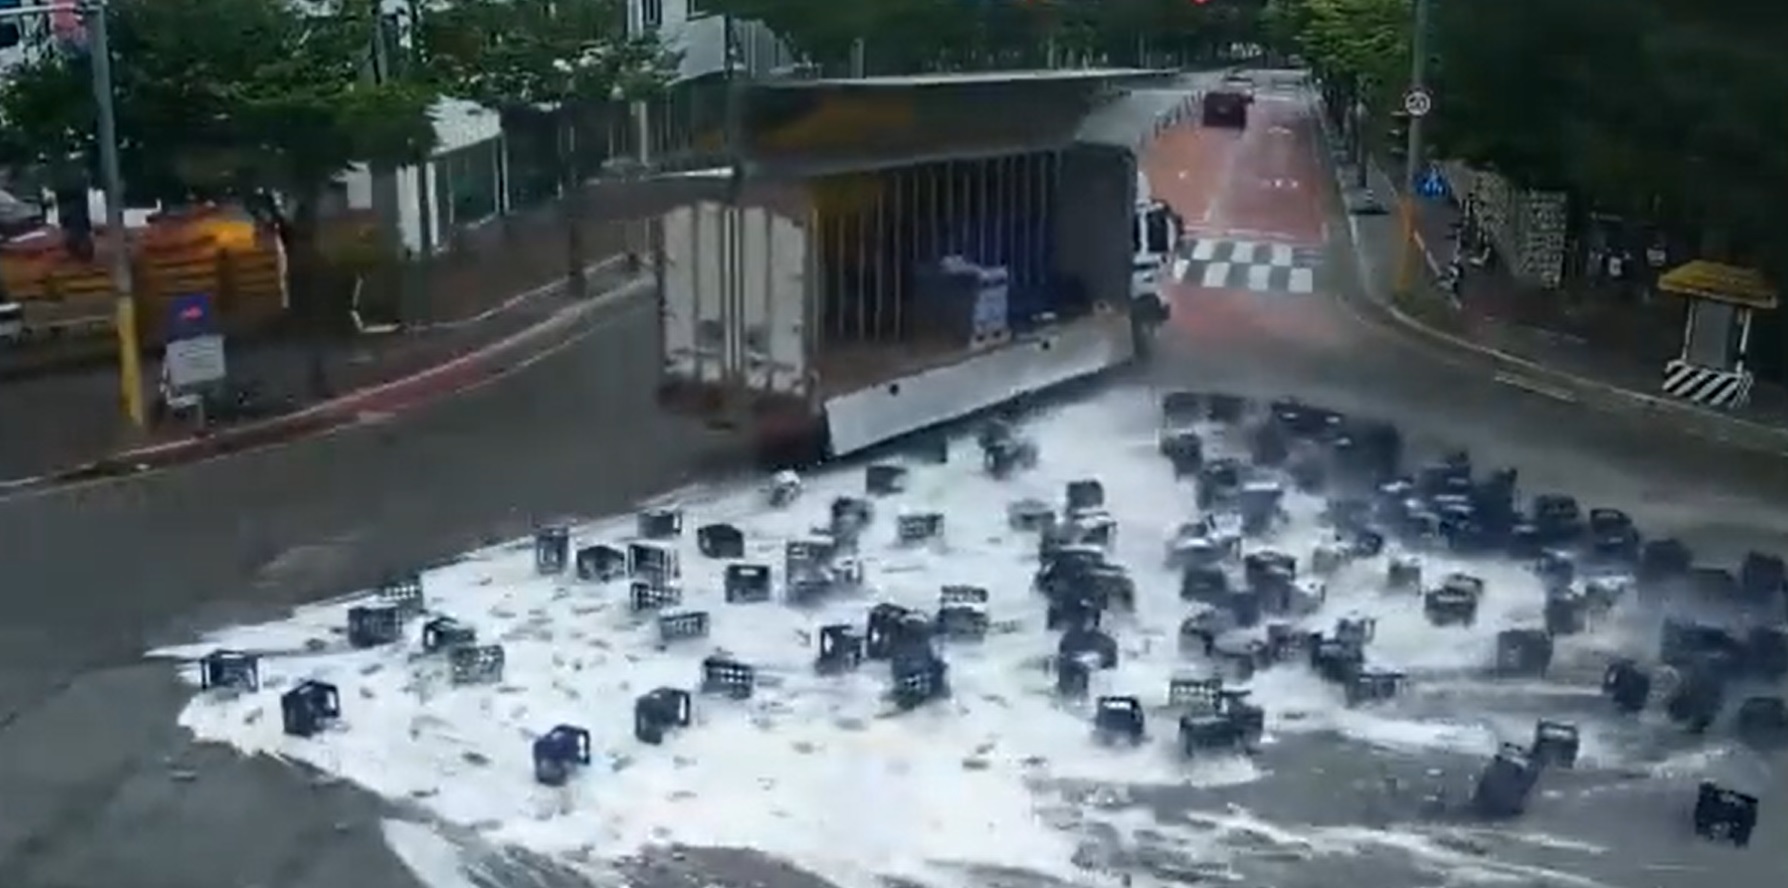 Camión derrama varias cajas de cerveza en Corea y ciudadanos ayudan al chofer